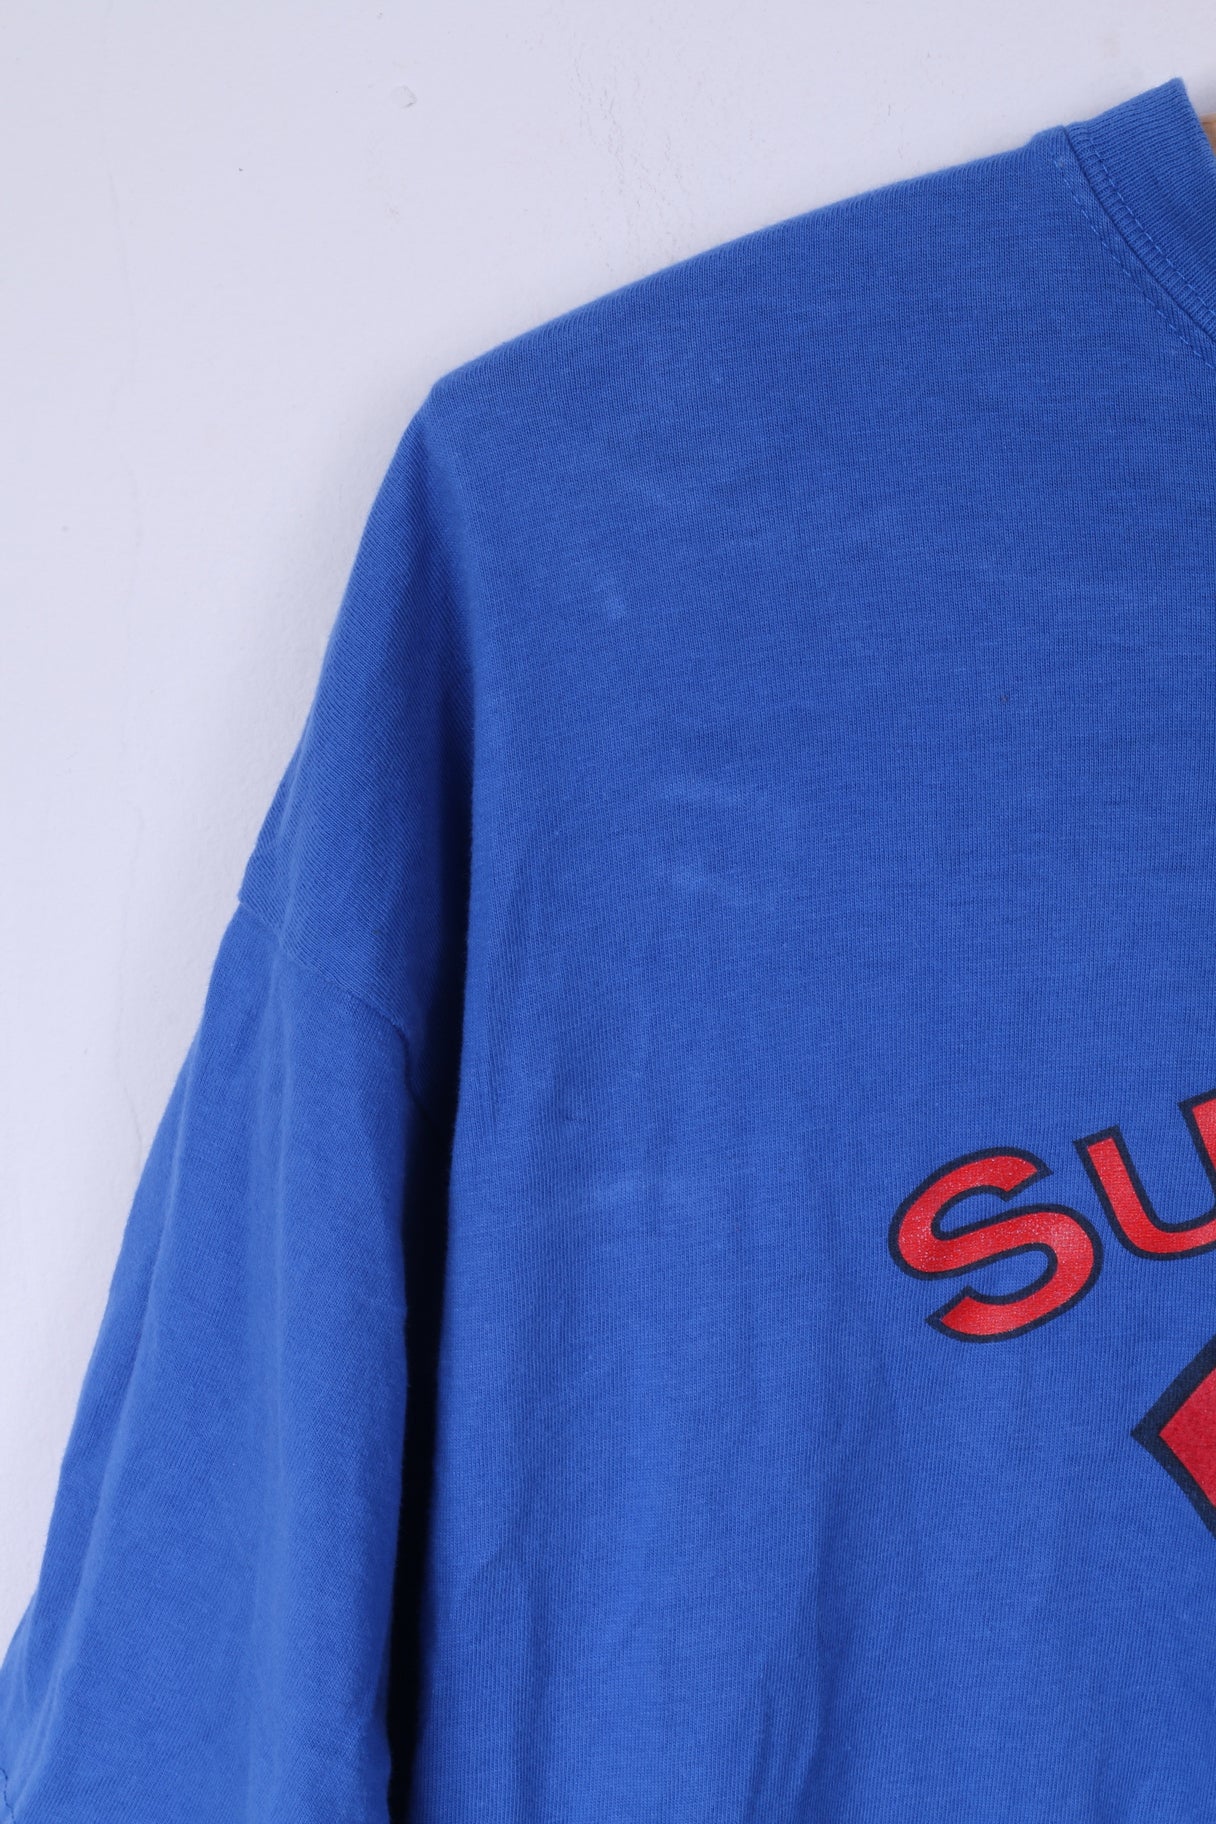 Bhs Ltd T-shirt da uomo L in cotone blu con grafica Superdad Superhero